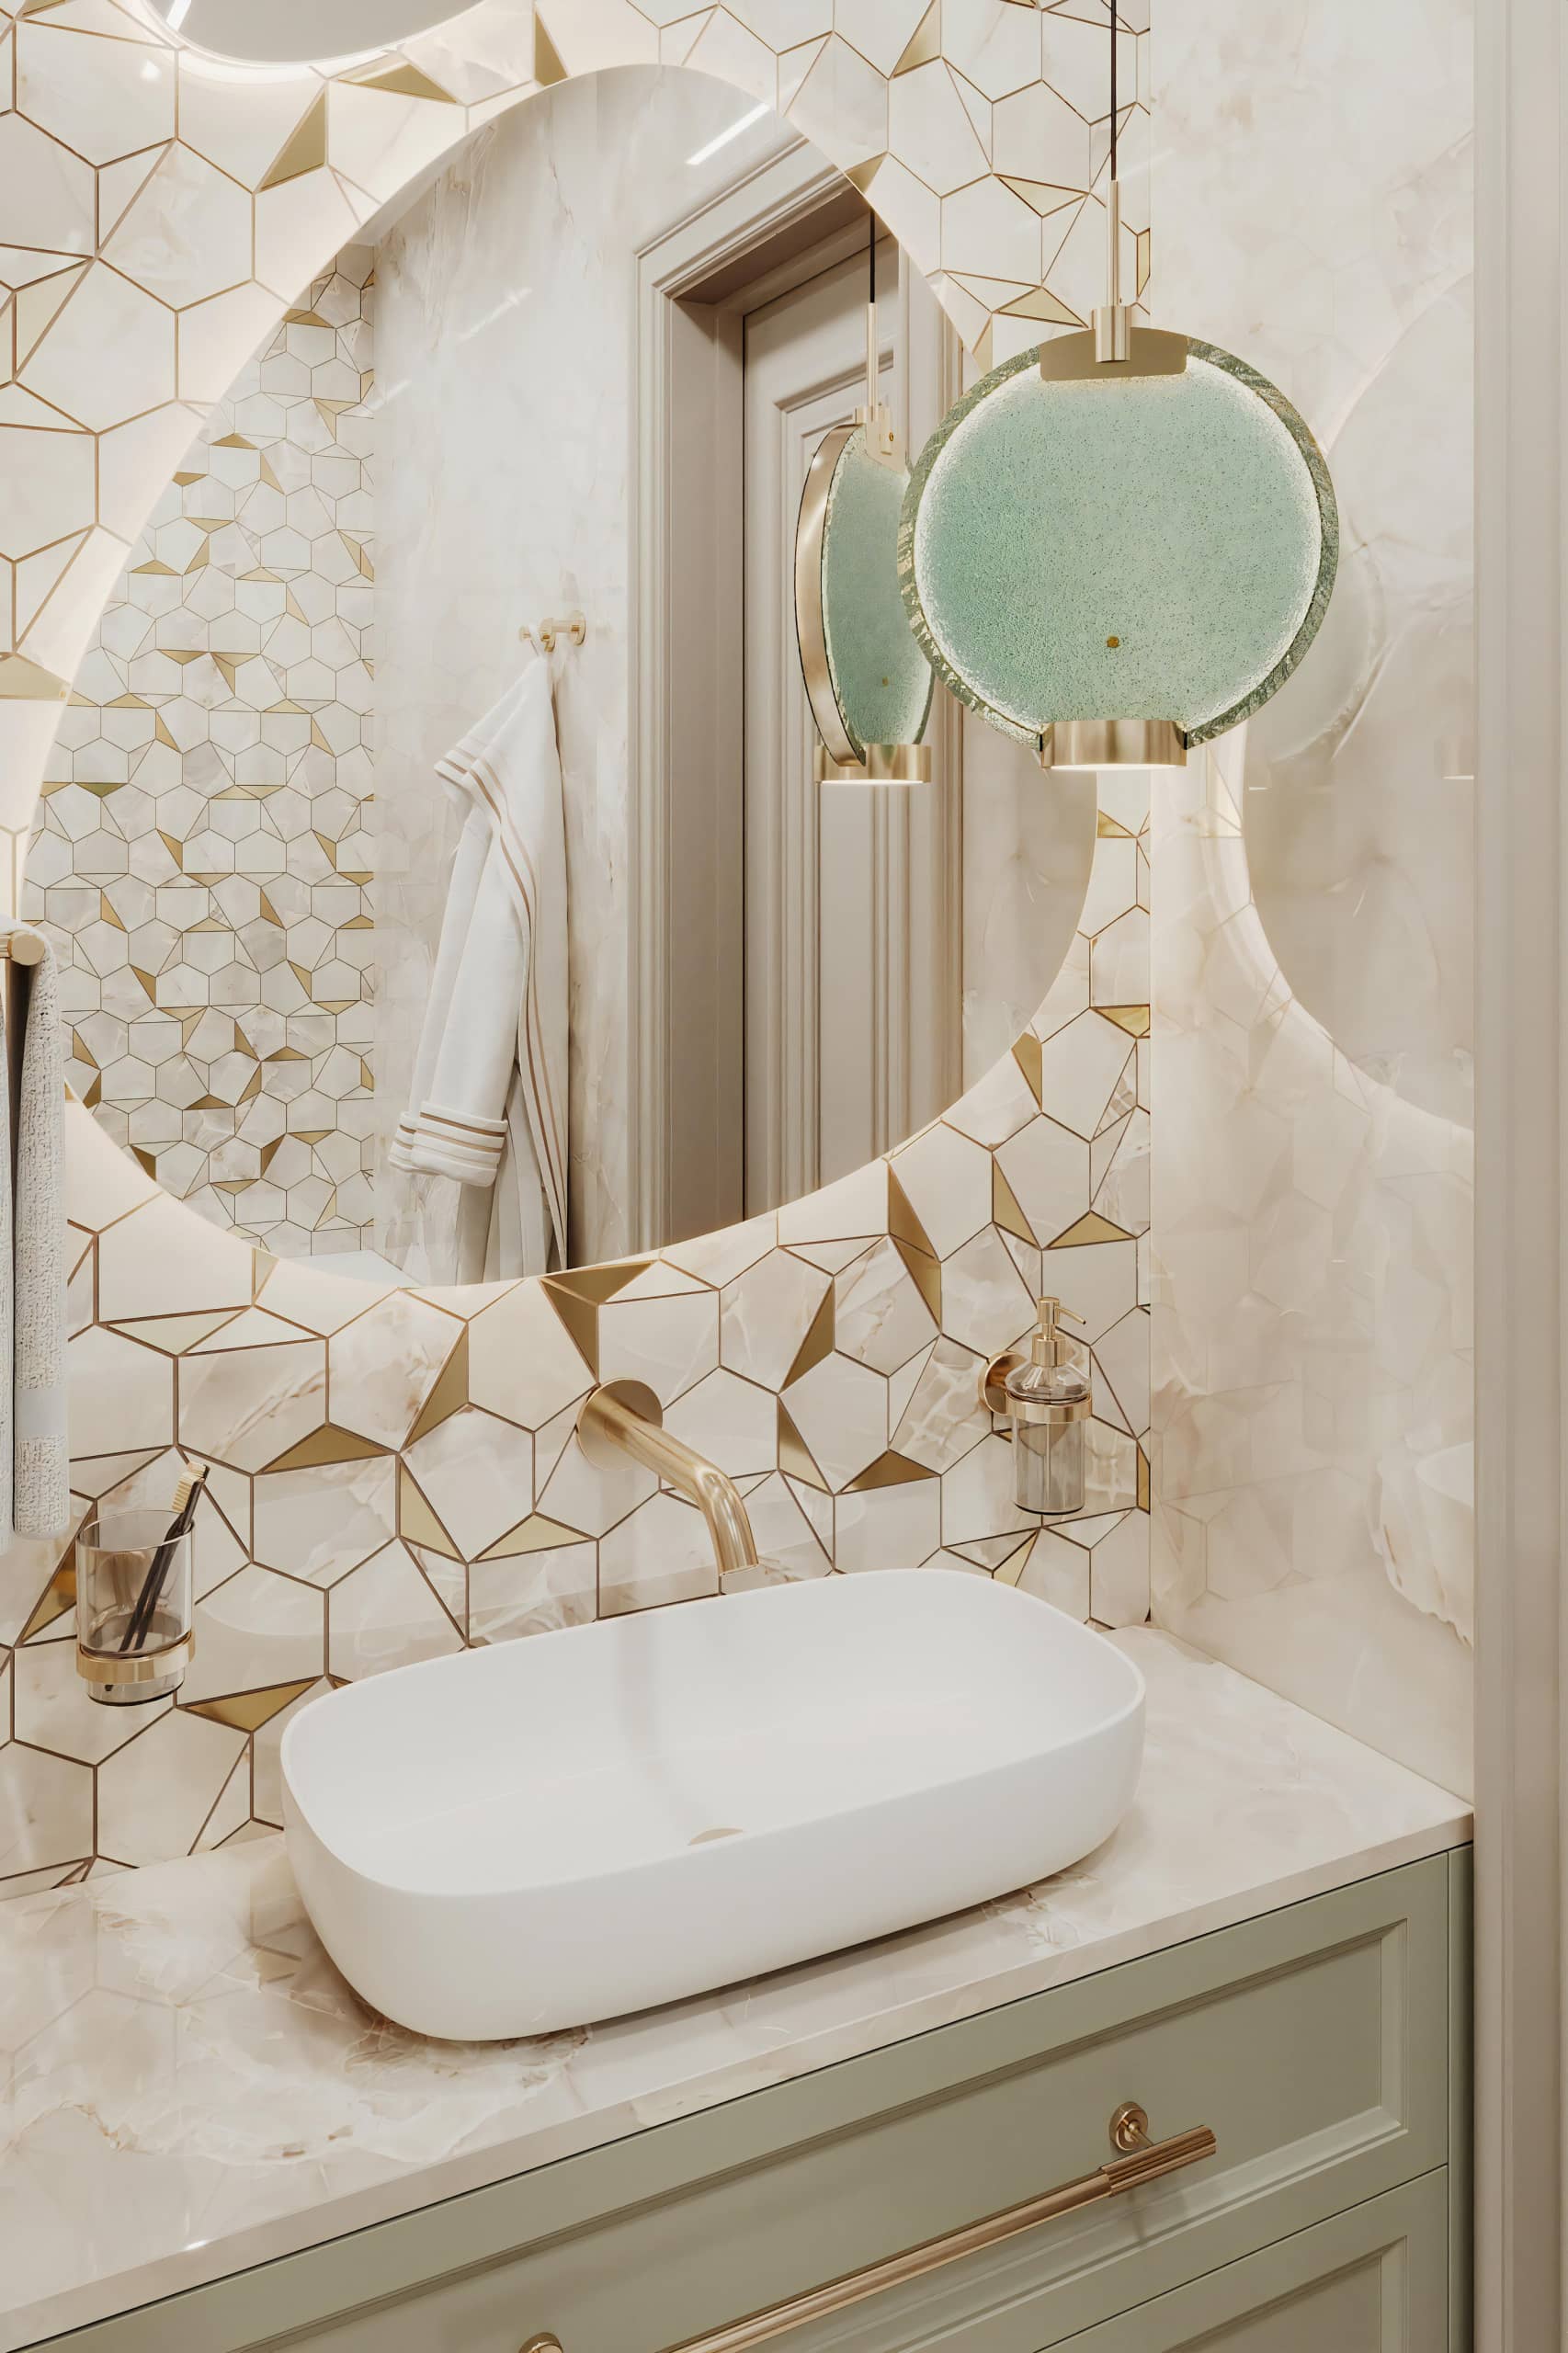 Оформление интерьера ванной комнаты в белый цвет. Фото № 71428.